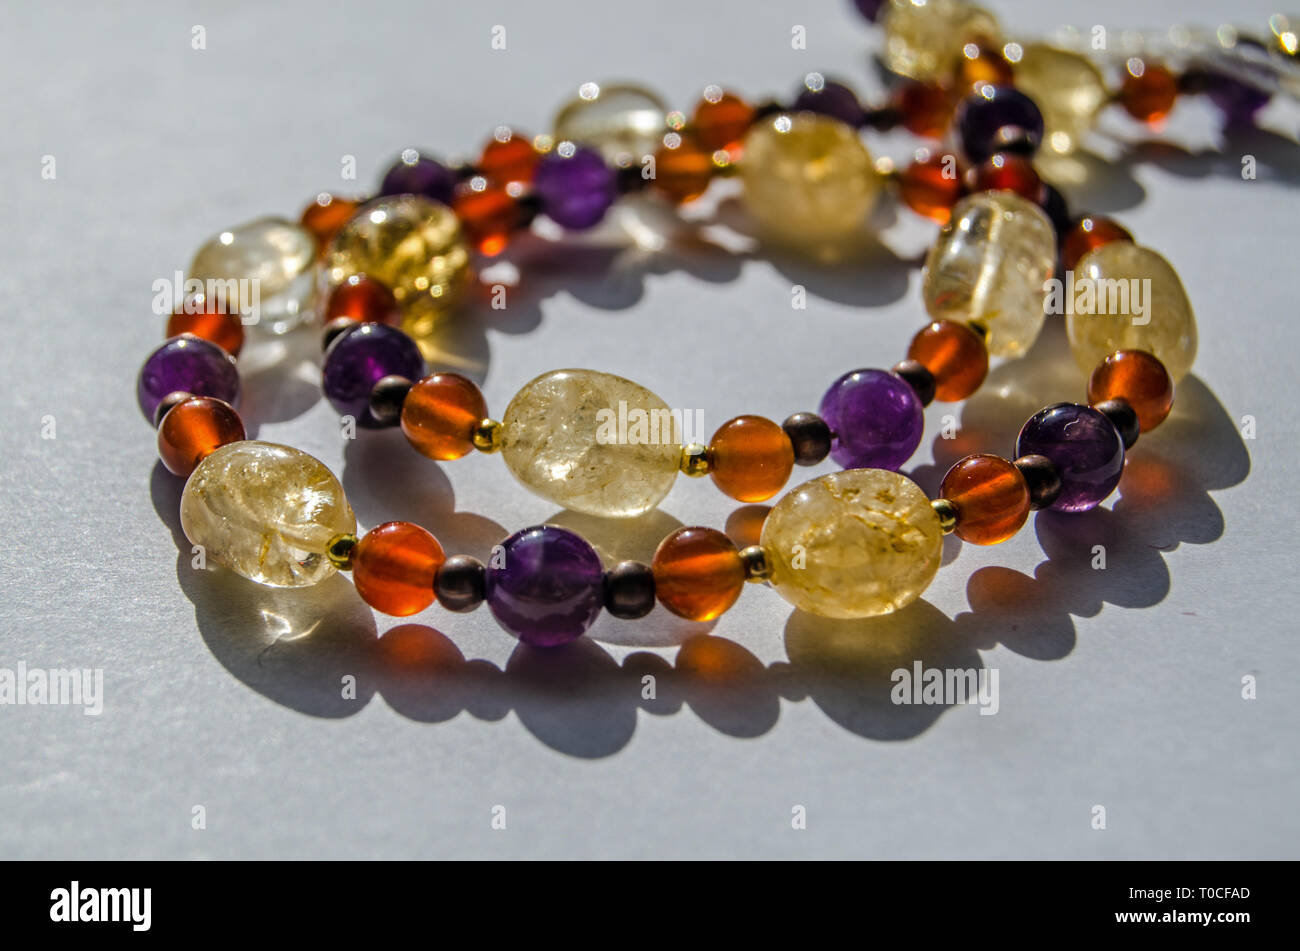 Pulsera y collar hecho a mano con coloridas piedras preciosas perlas piedras semi-preciosas incluyendo amarillo citrino, amatista púrpura y naranja sardio. Foto de stock